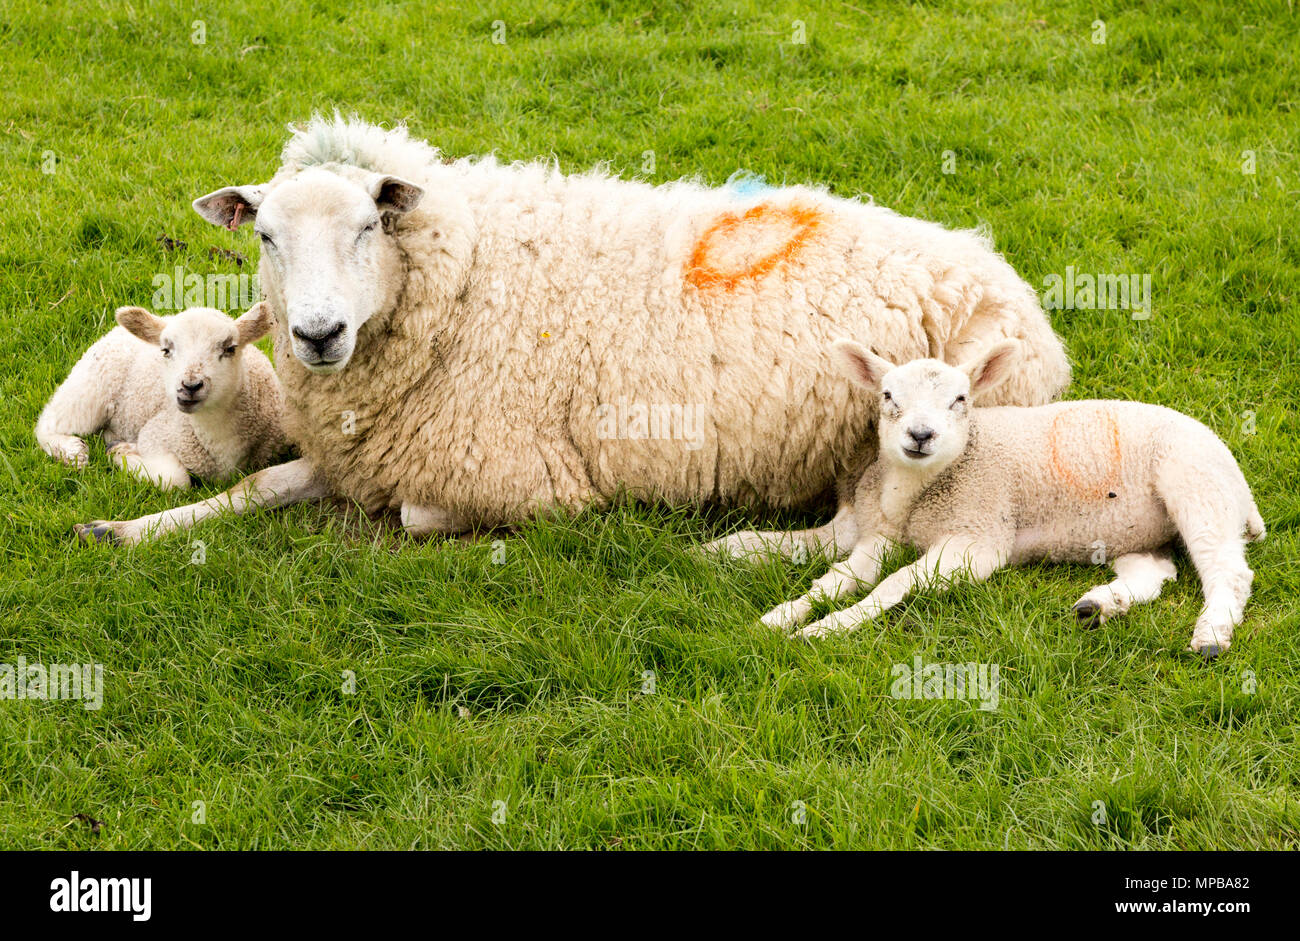 Malati pecora madre pecora con due agnelli che stabilisce su erba, Wiltshire, Inghilterra, Regno Unito Foto Stock